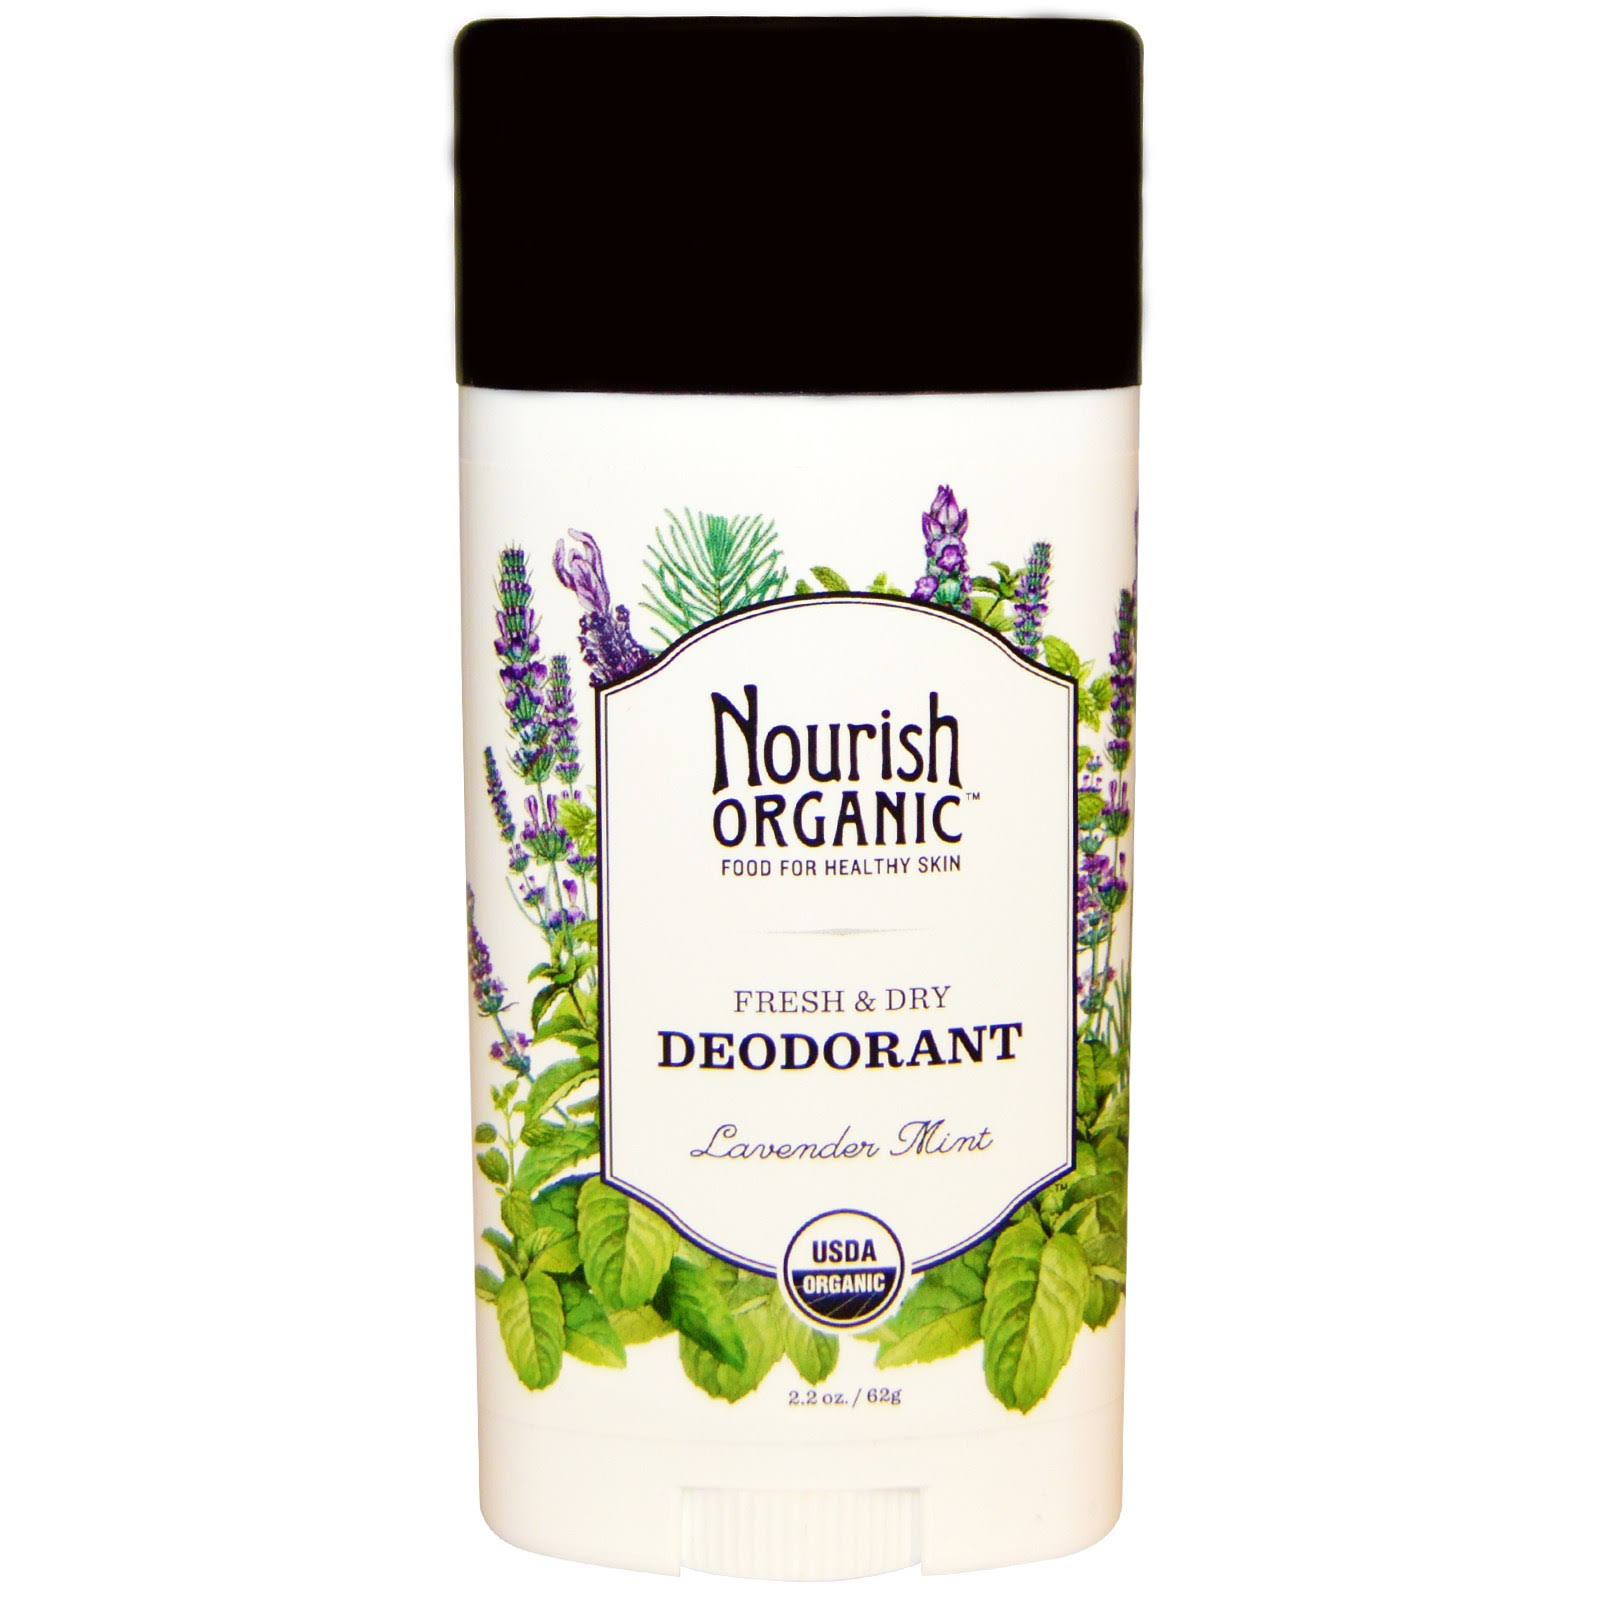 Nourish Organic Deodorant - Lavender Mint